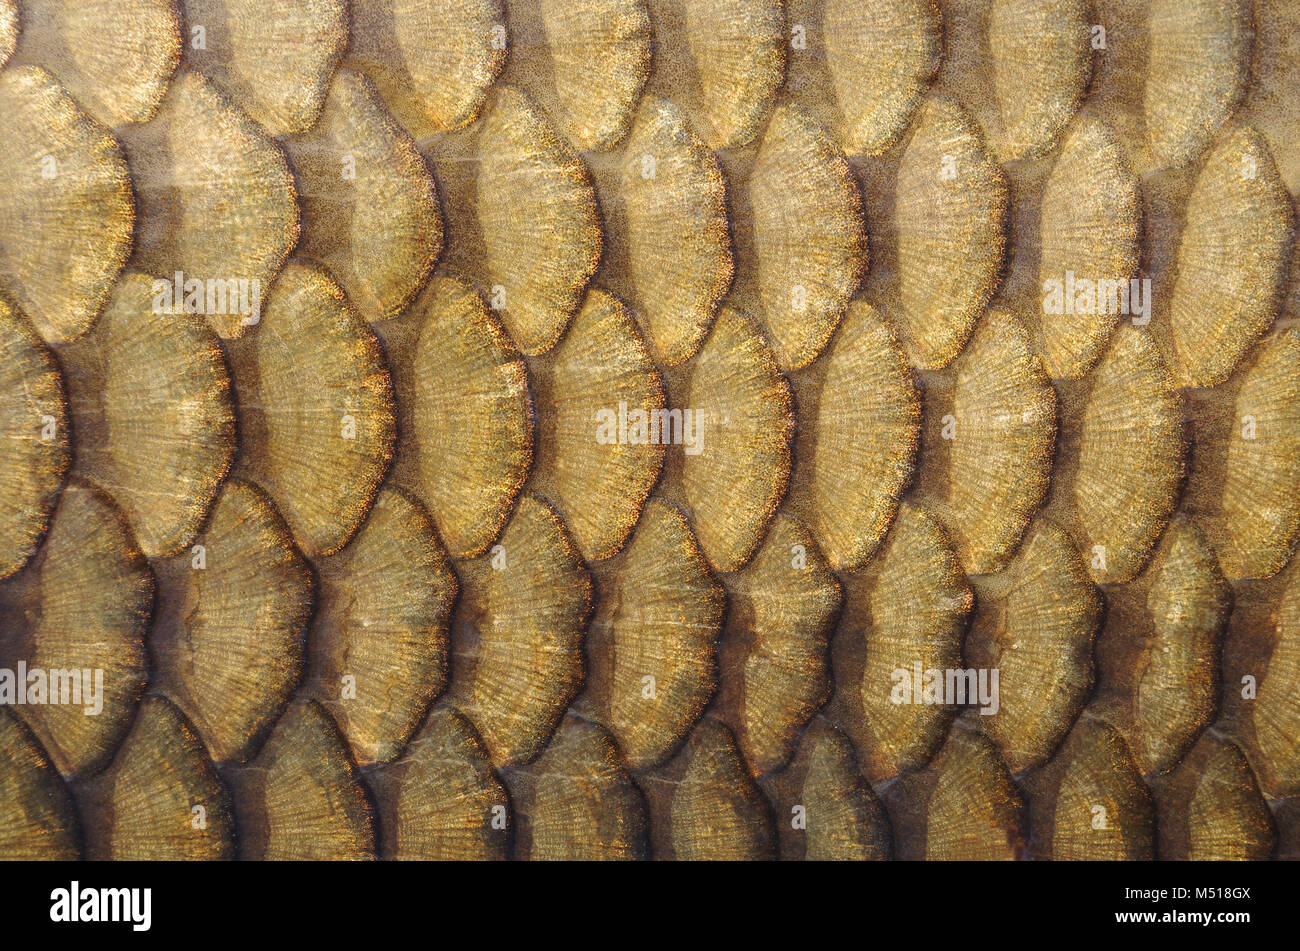 Fisch schuppen. Gold carp Skalen close-up Stockfoto